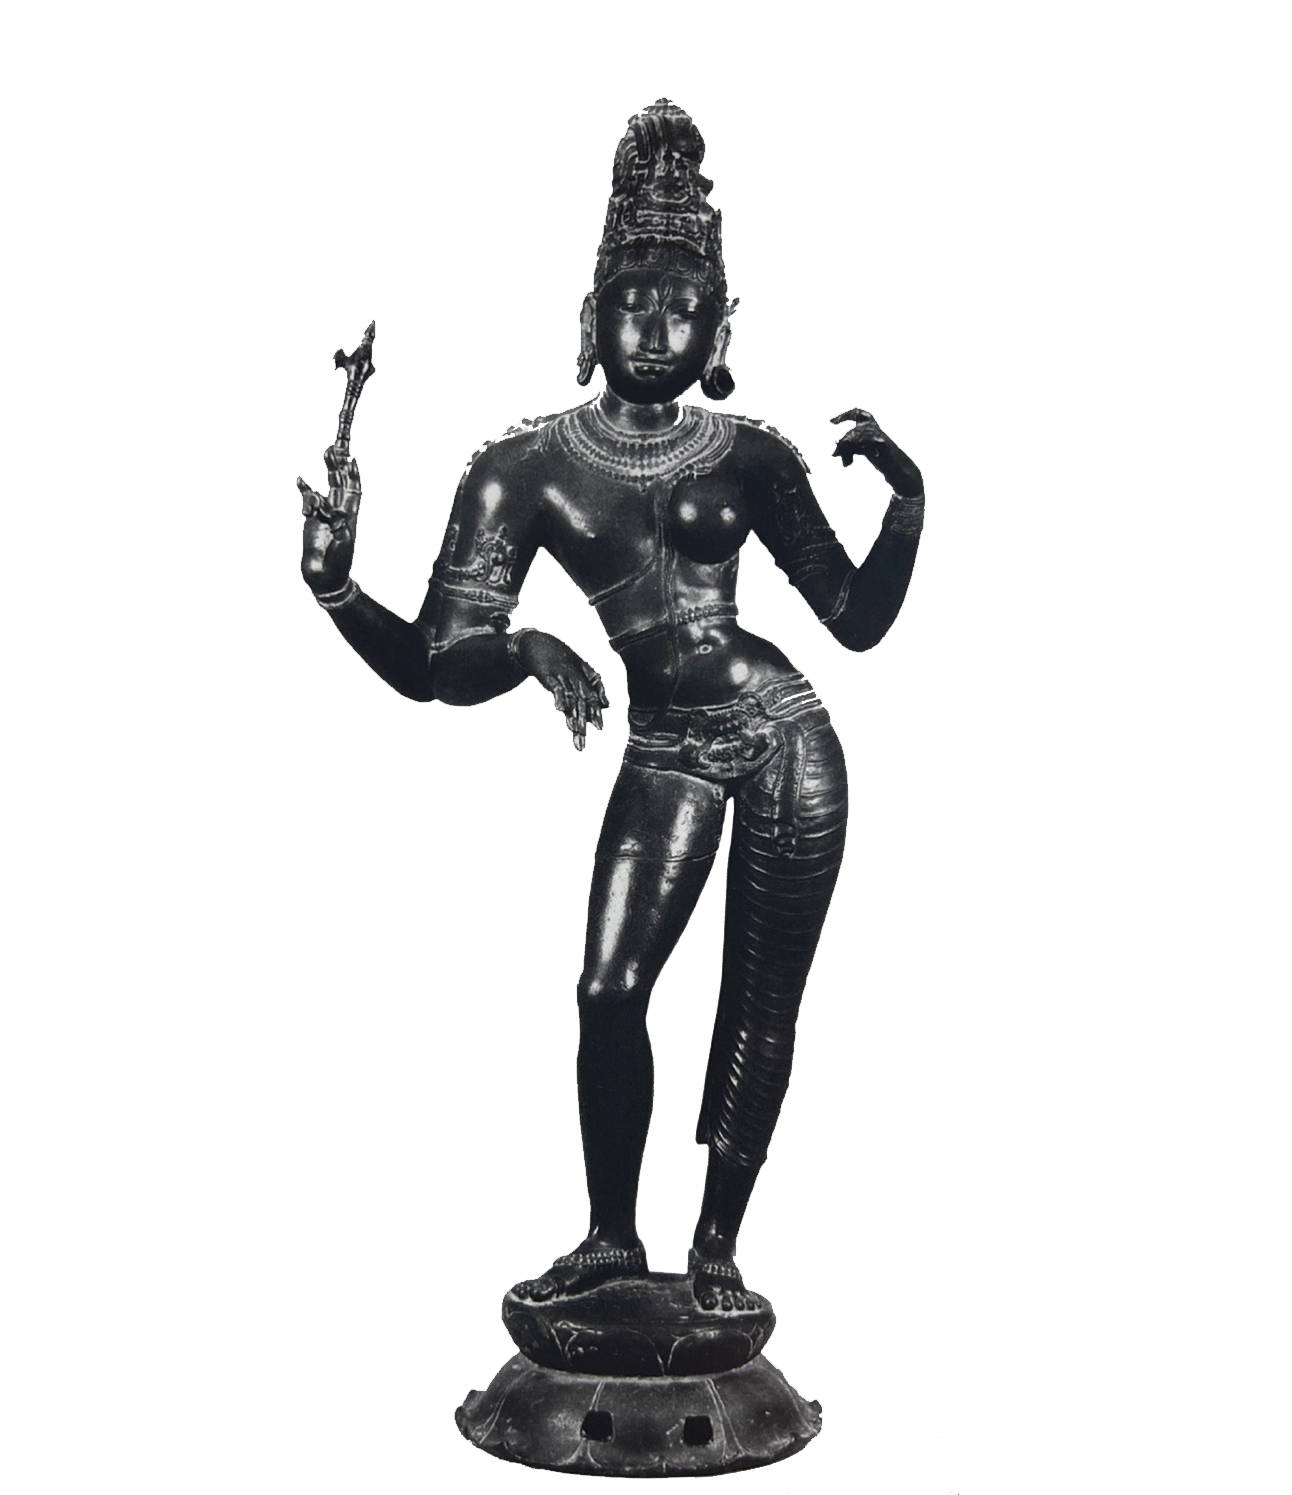 Half Uma and Half Shiva (Ardhanarishvara)